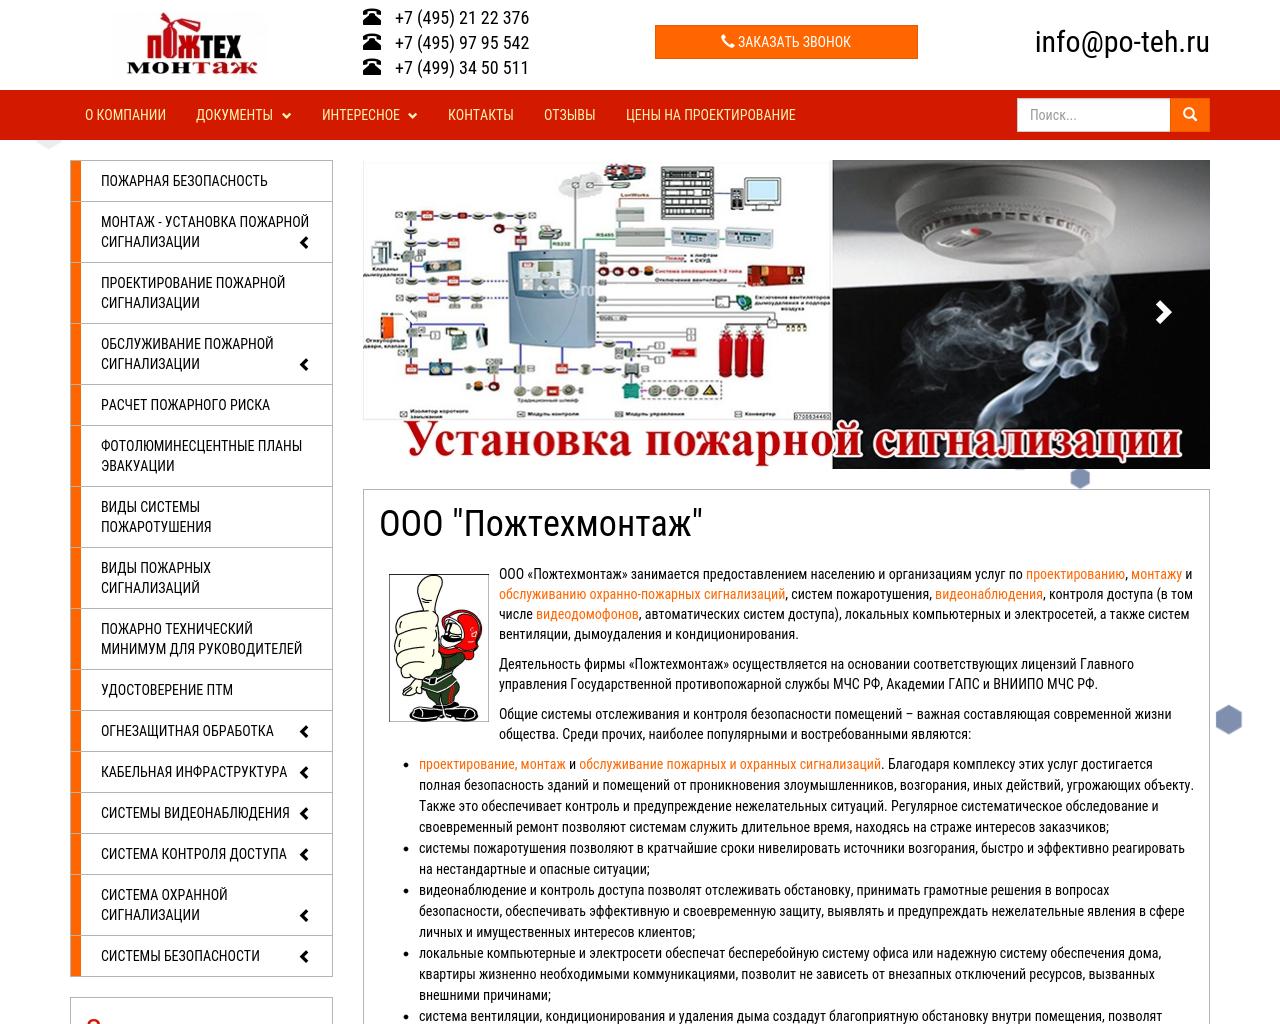 Изображение сайта po-teh.ru в разрешении 1280x1024